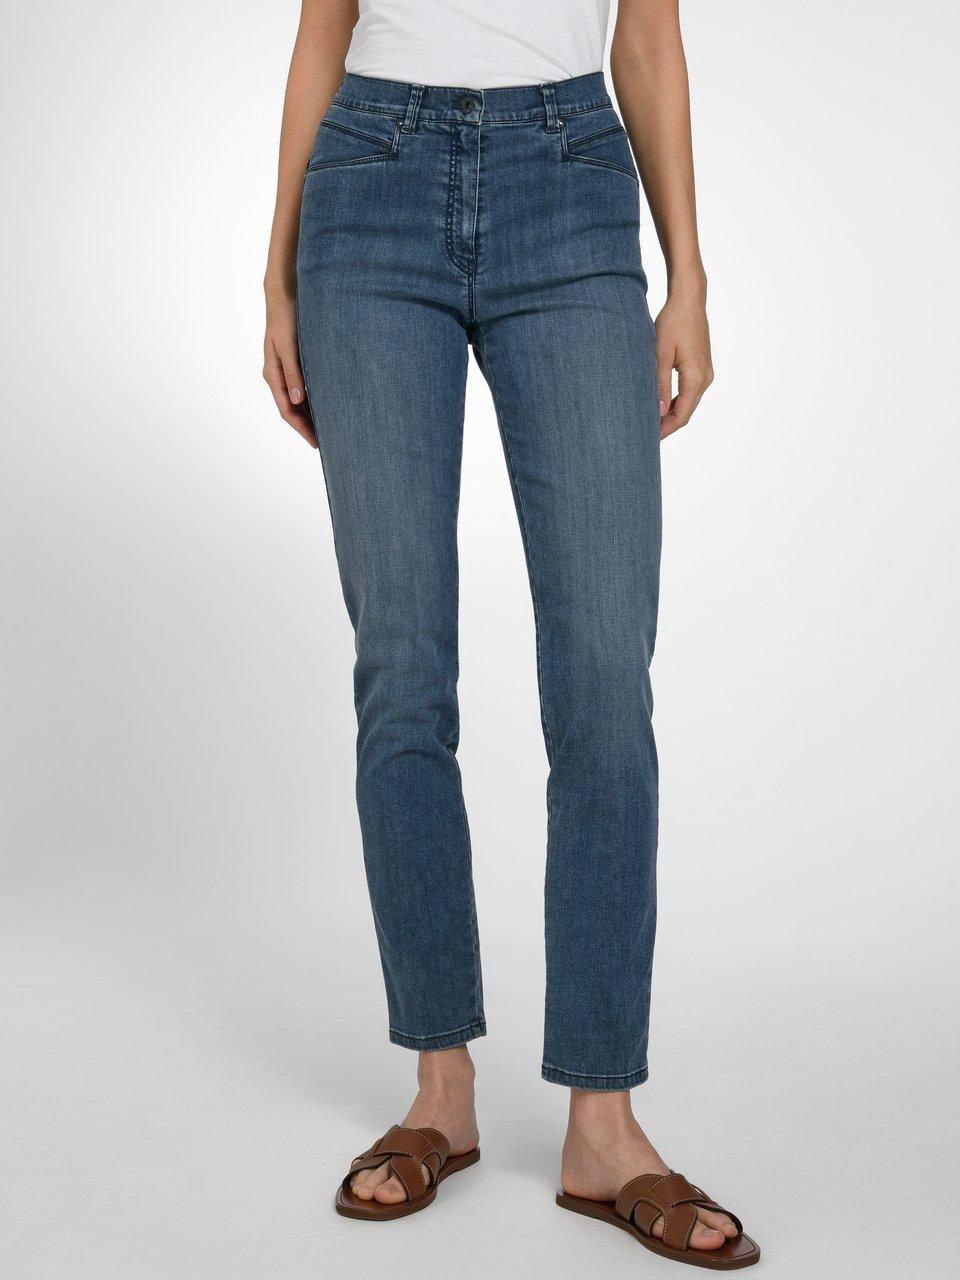 Raphaela by Brax - blue - Comfort Dark Caren Modell denim Plus-Zauber-Jeans